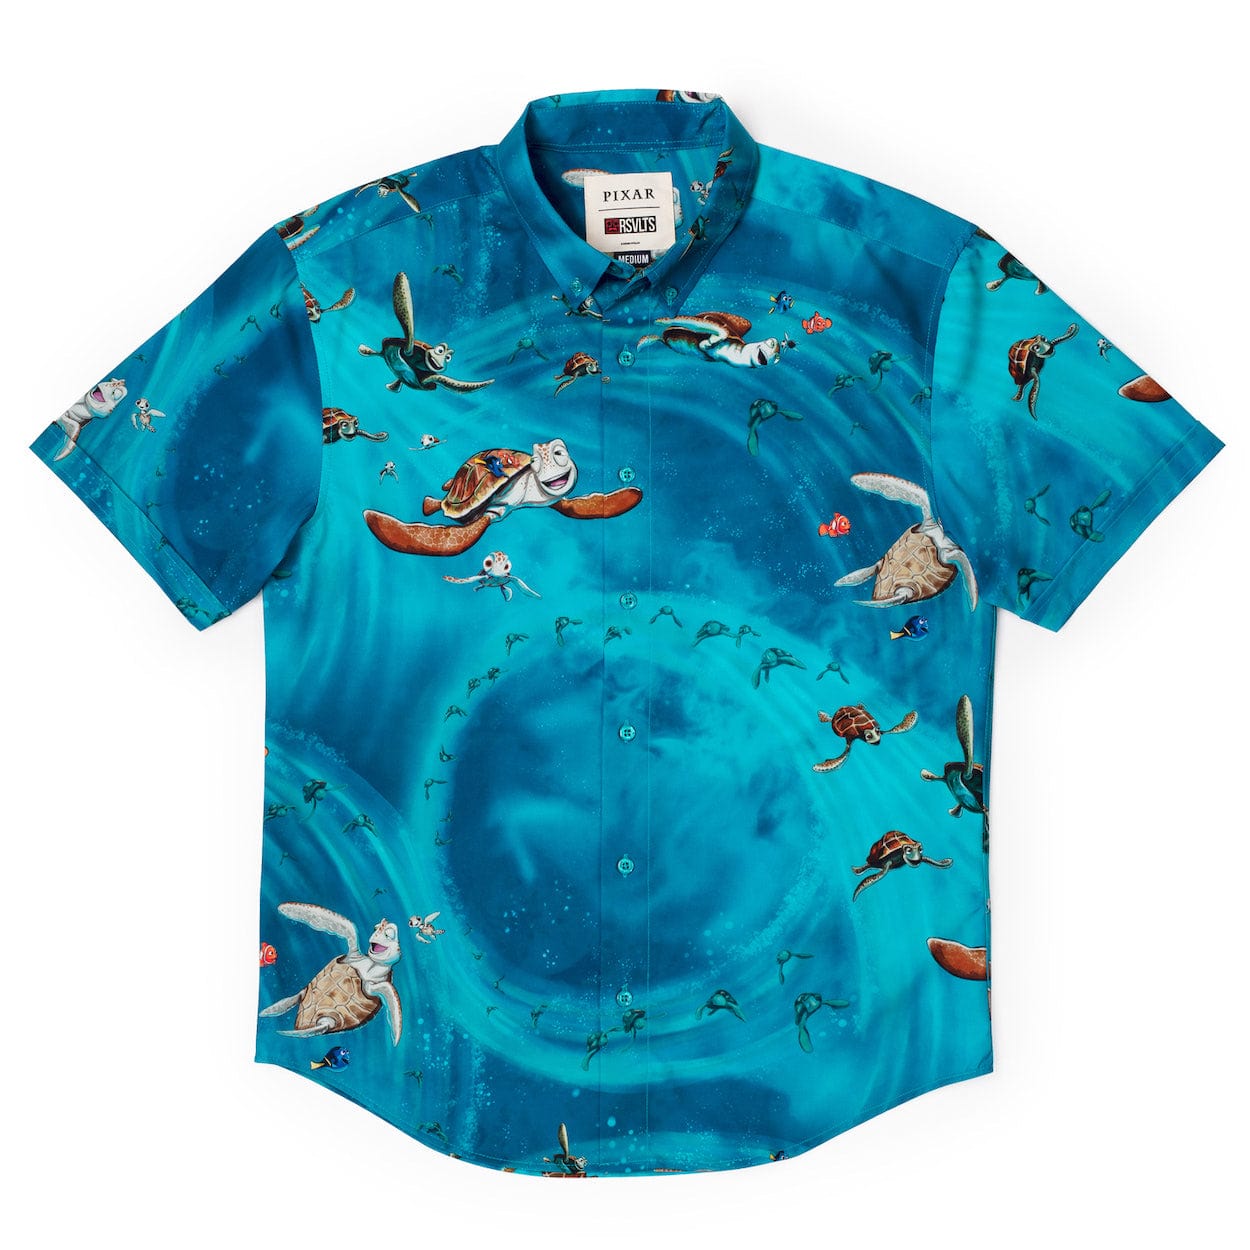 RSVLTS Finding Nemo The E.A.C. Dude! Short Sleeve Shirt